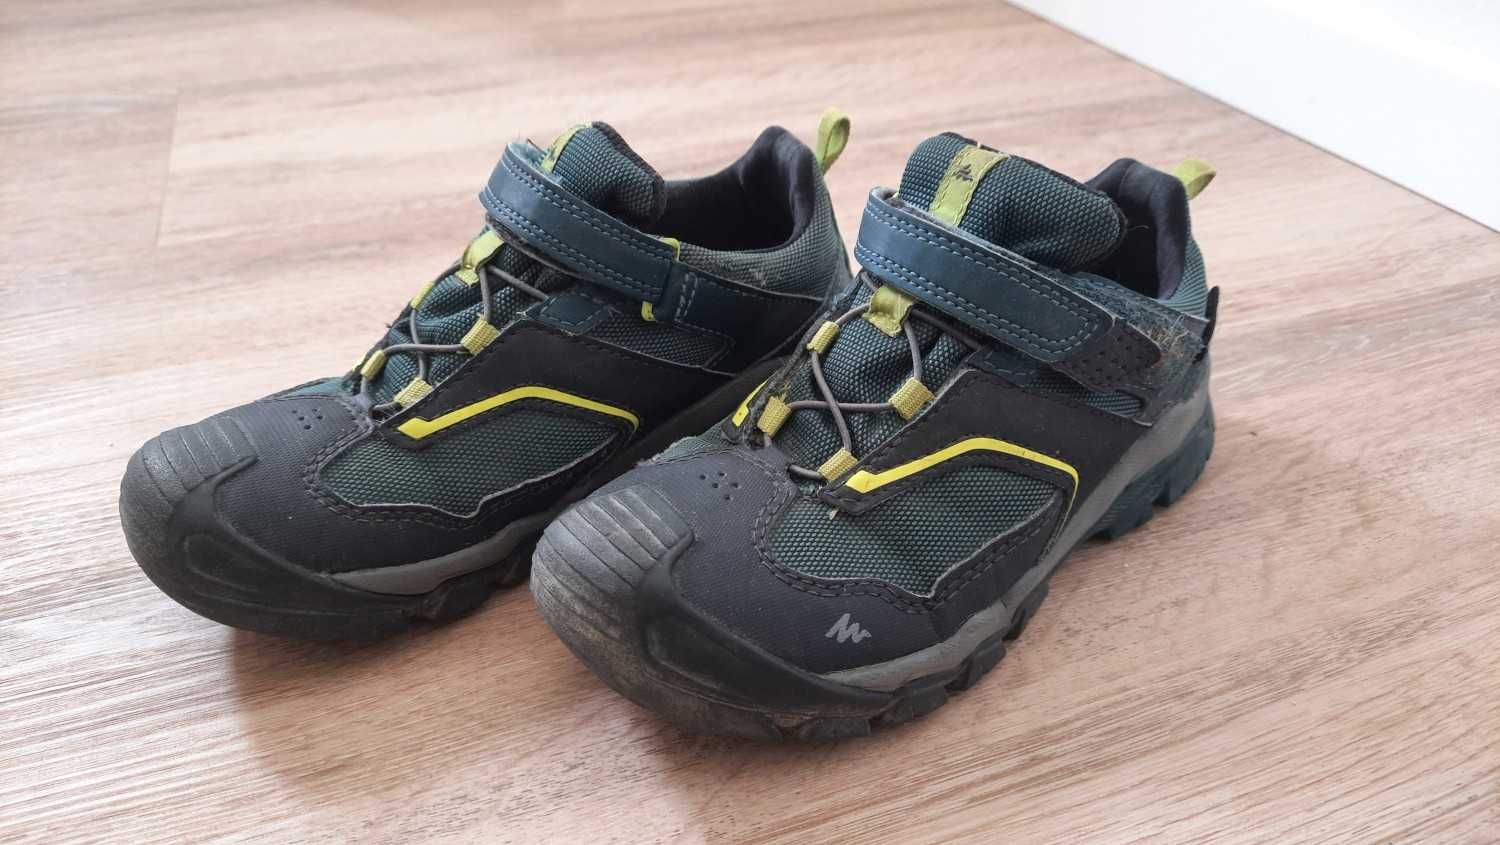 Buty chłopięce Quechua Crossrock Waterproof - rozmiar 33